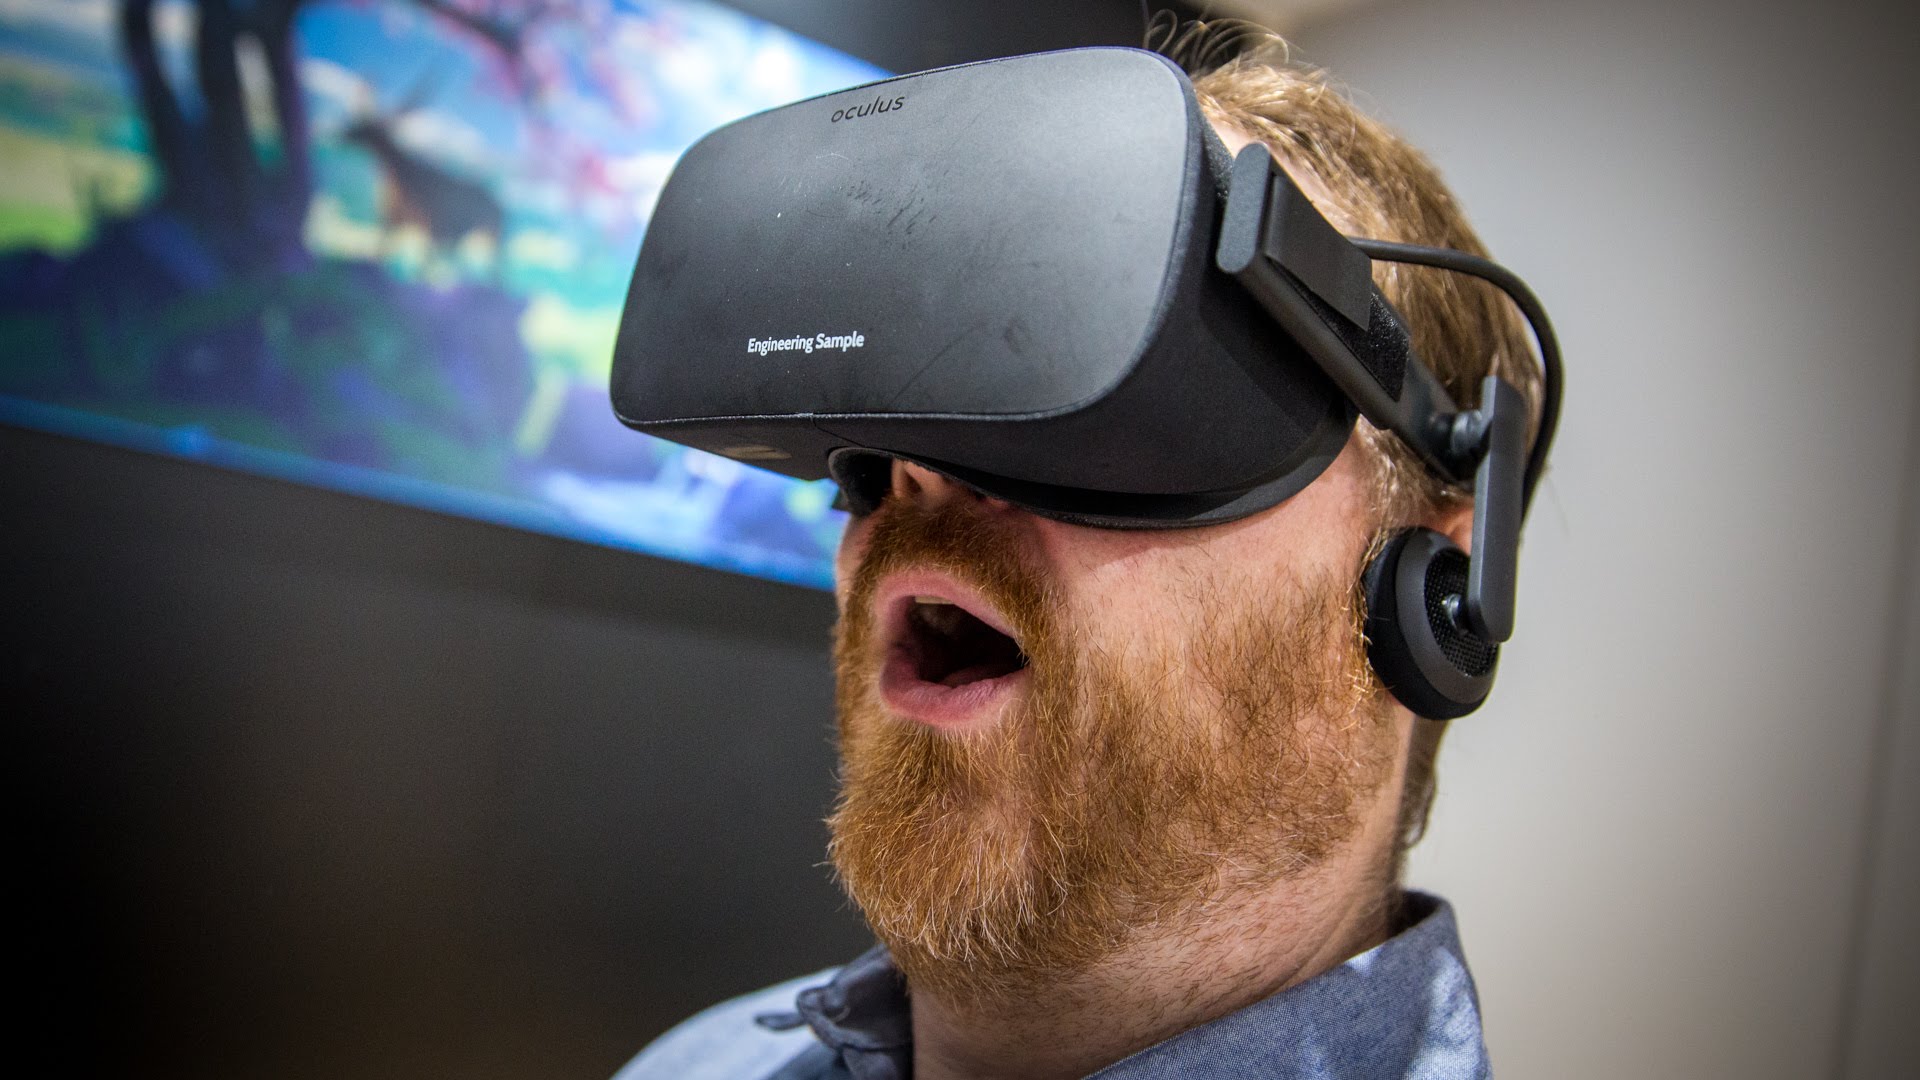 CyberPowerPC, PC VR Ready e Oculus Rift a 1000€